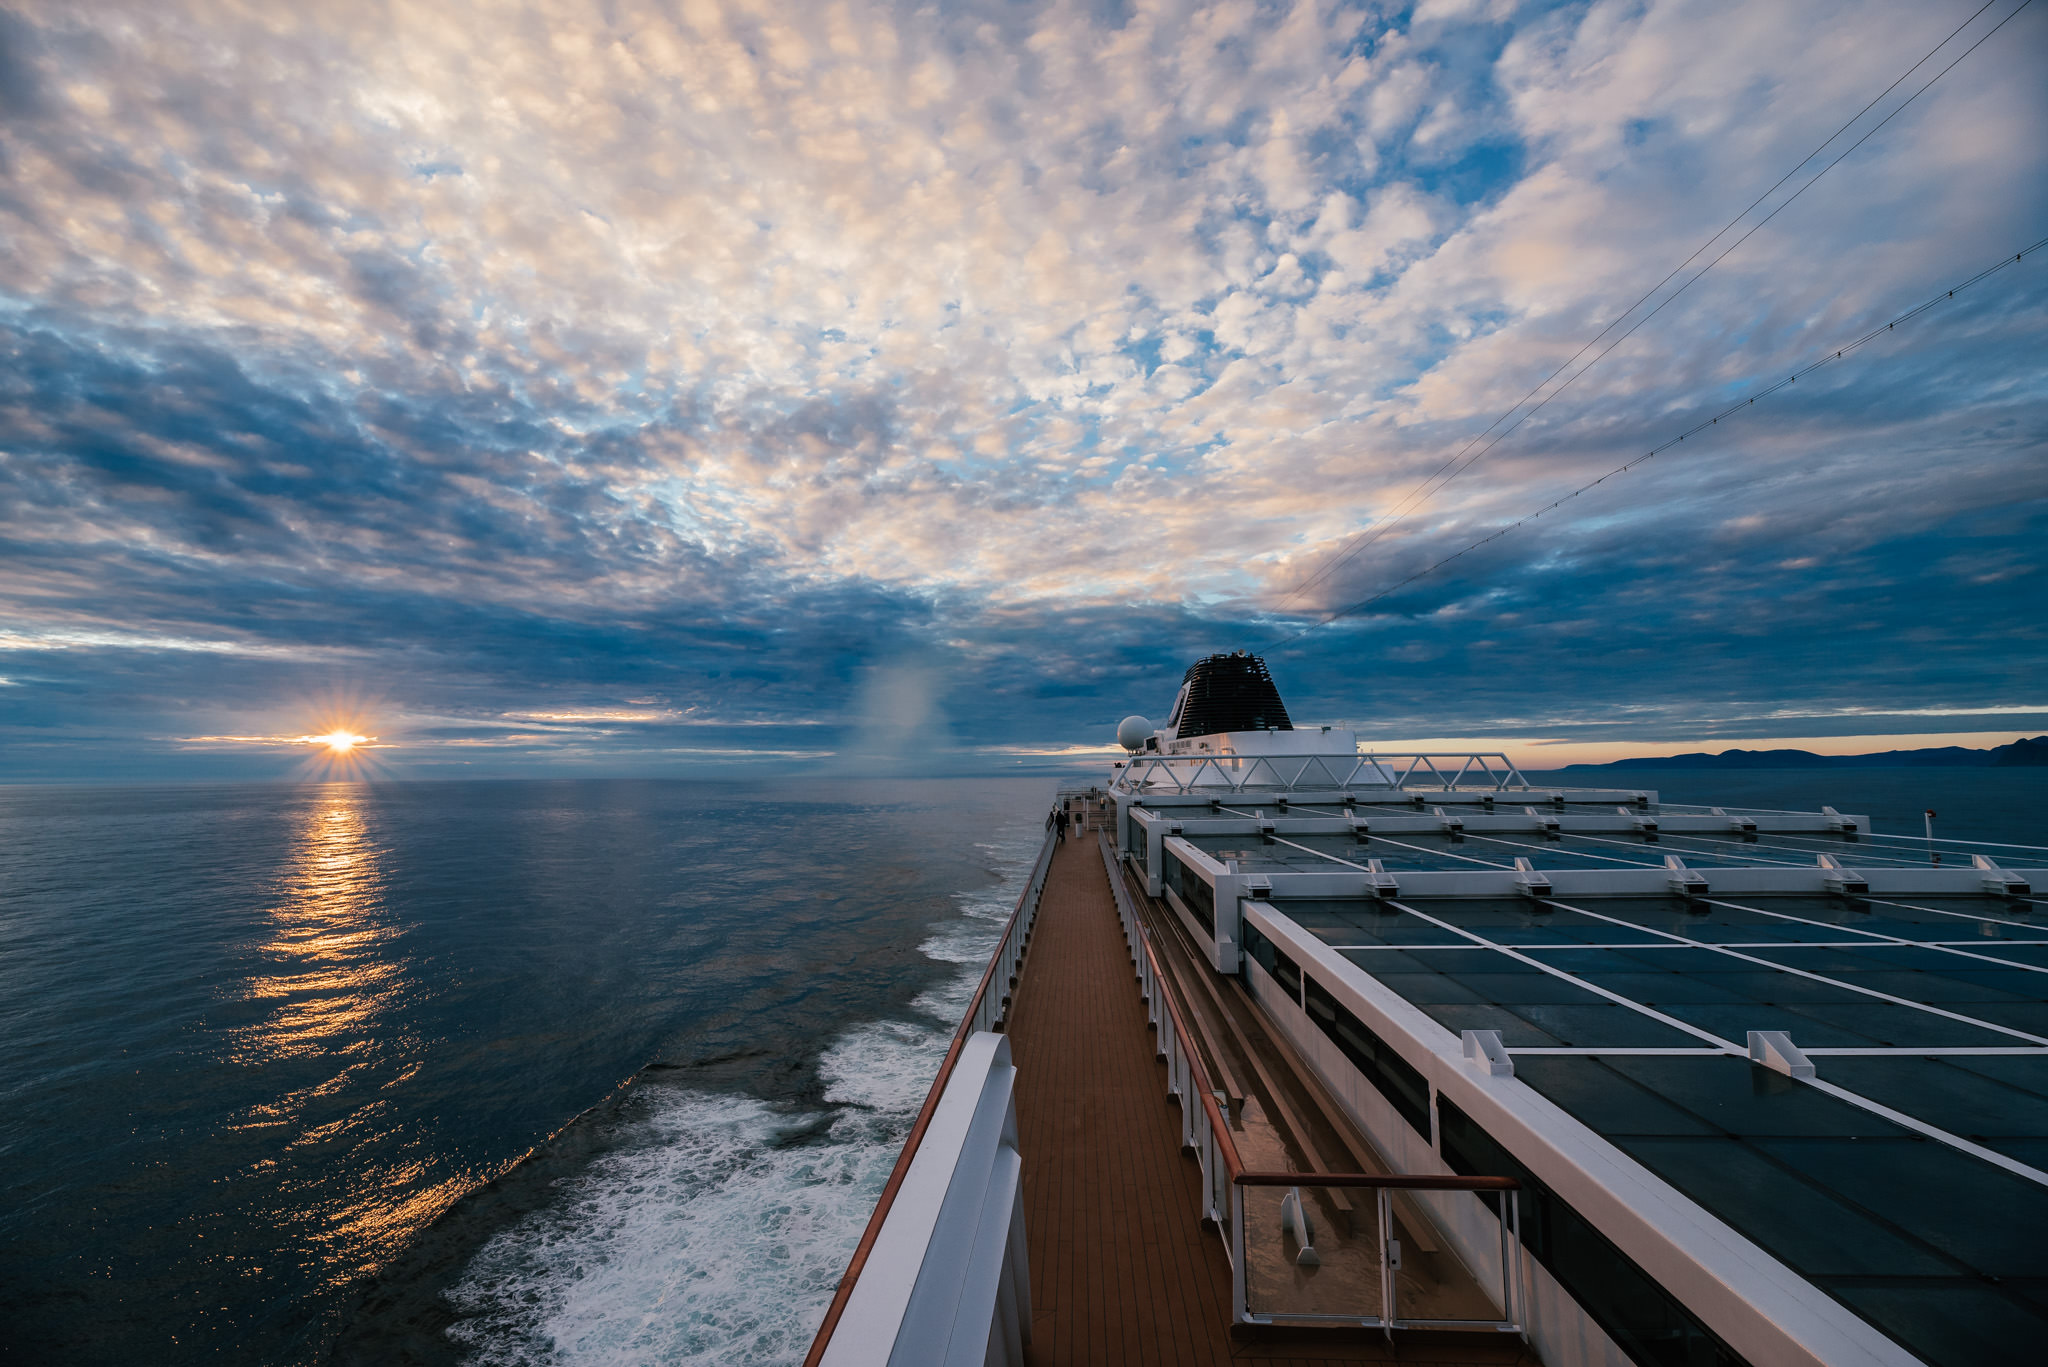 Norway Midnight Sun Cruise, Follow the Midnight Sun